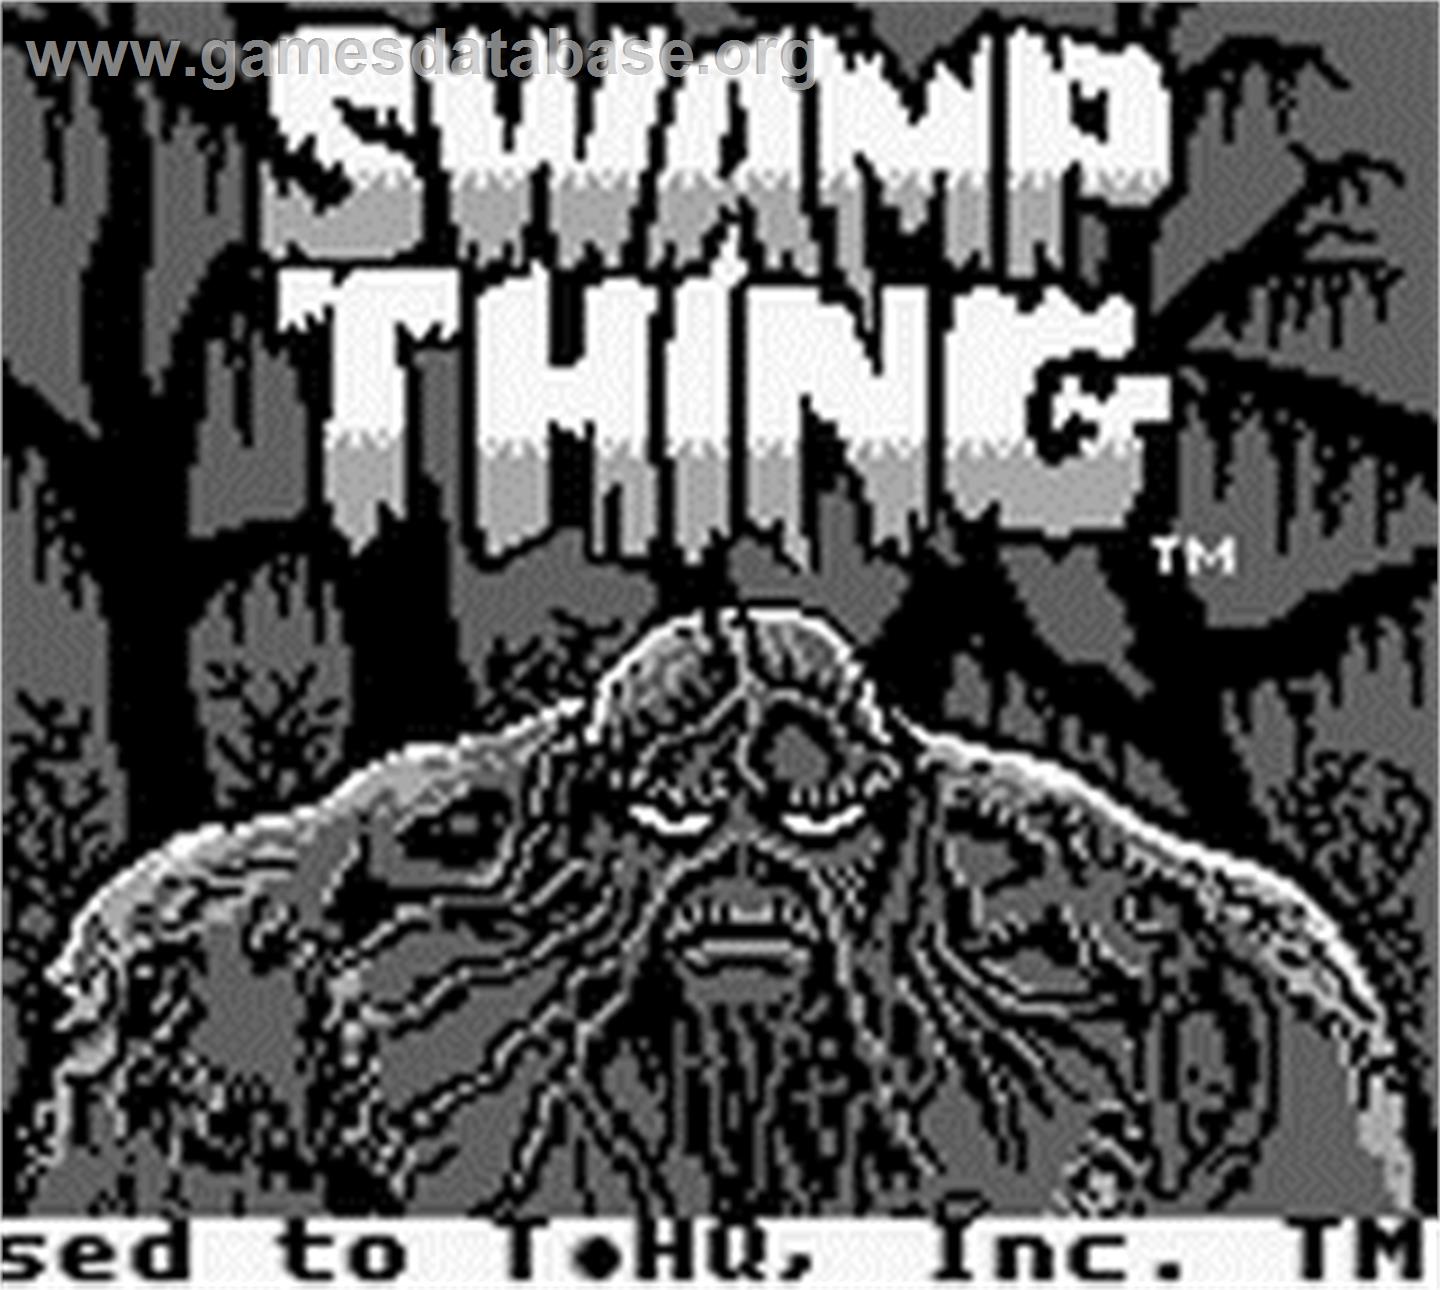 Swamp Thing - Nintendo Game Boy - Artwork - Title Screen